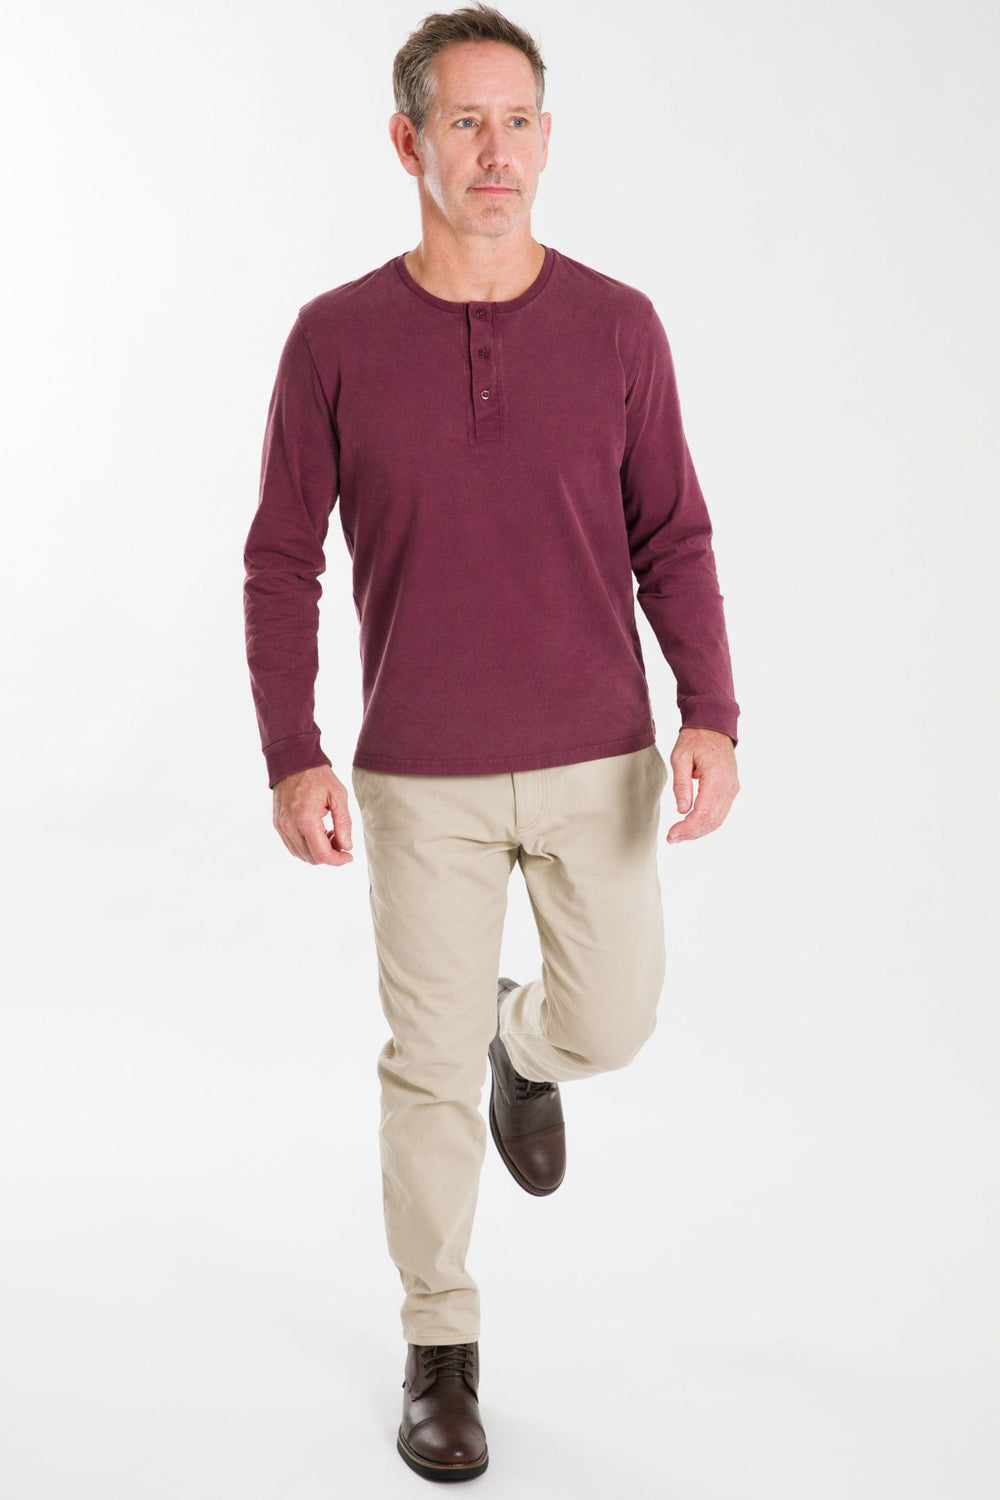 Buy Burgundy Long Sleeve Pima Cotton Henley for Short Men | Ash & Erie   Henley